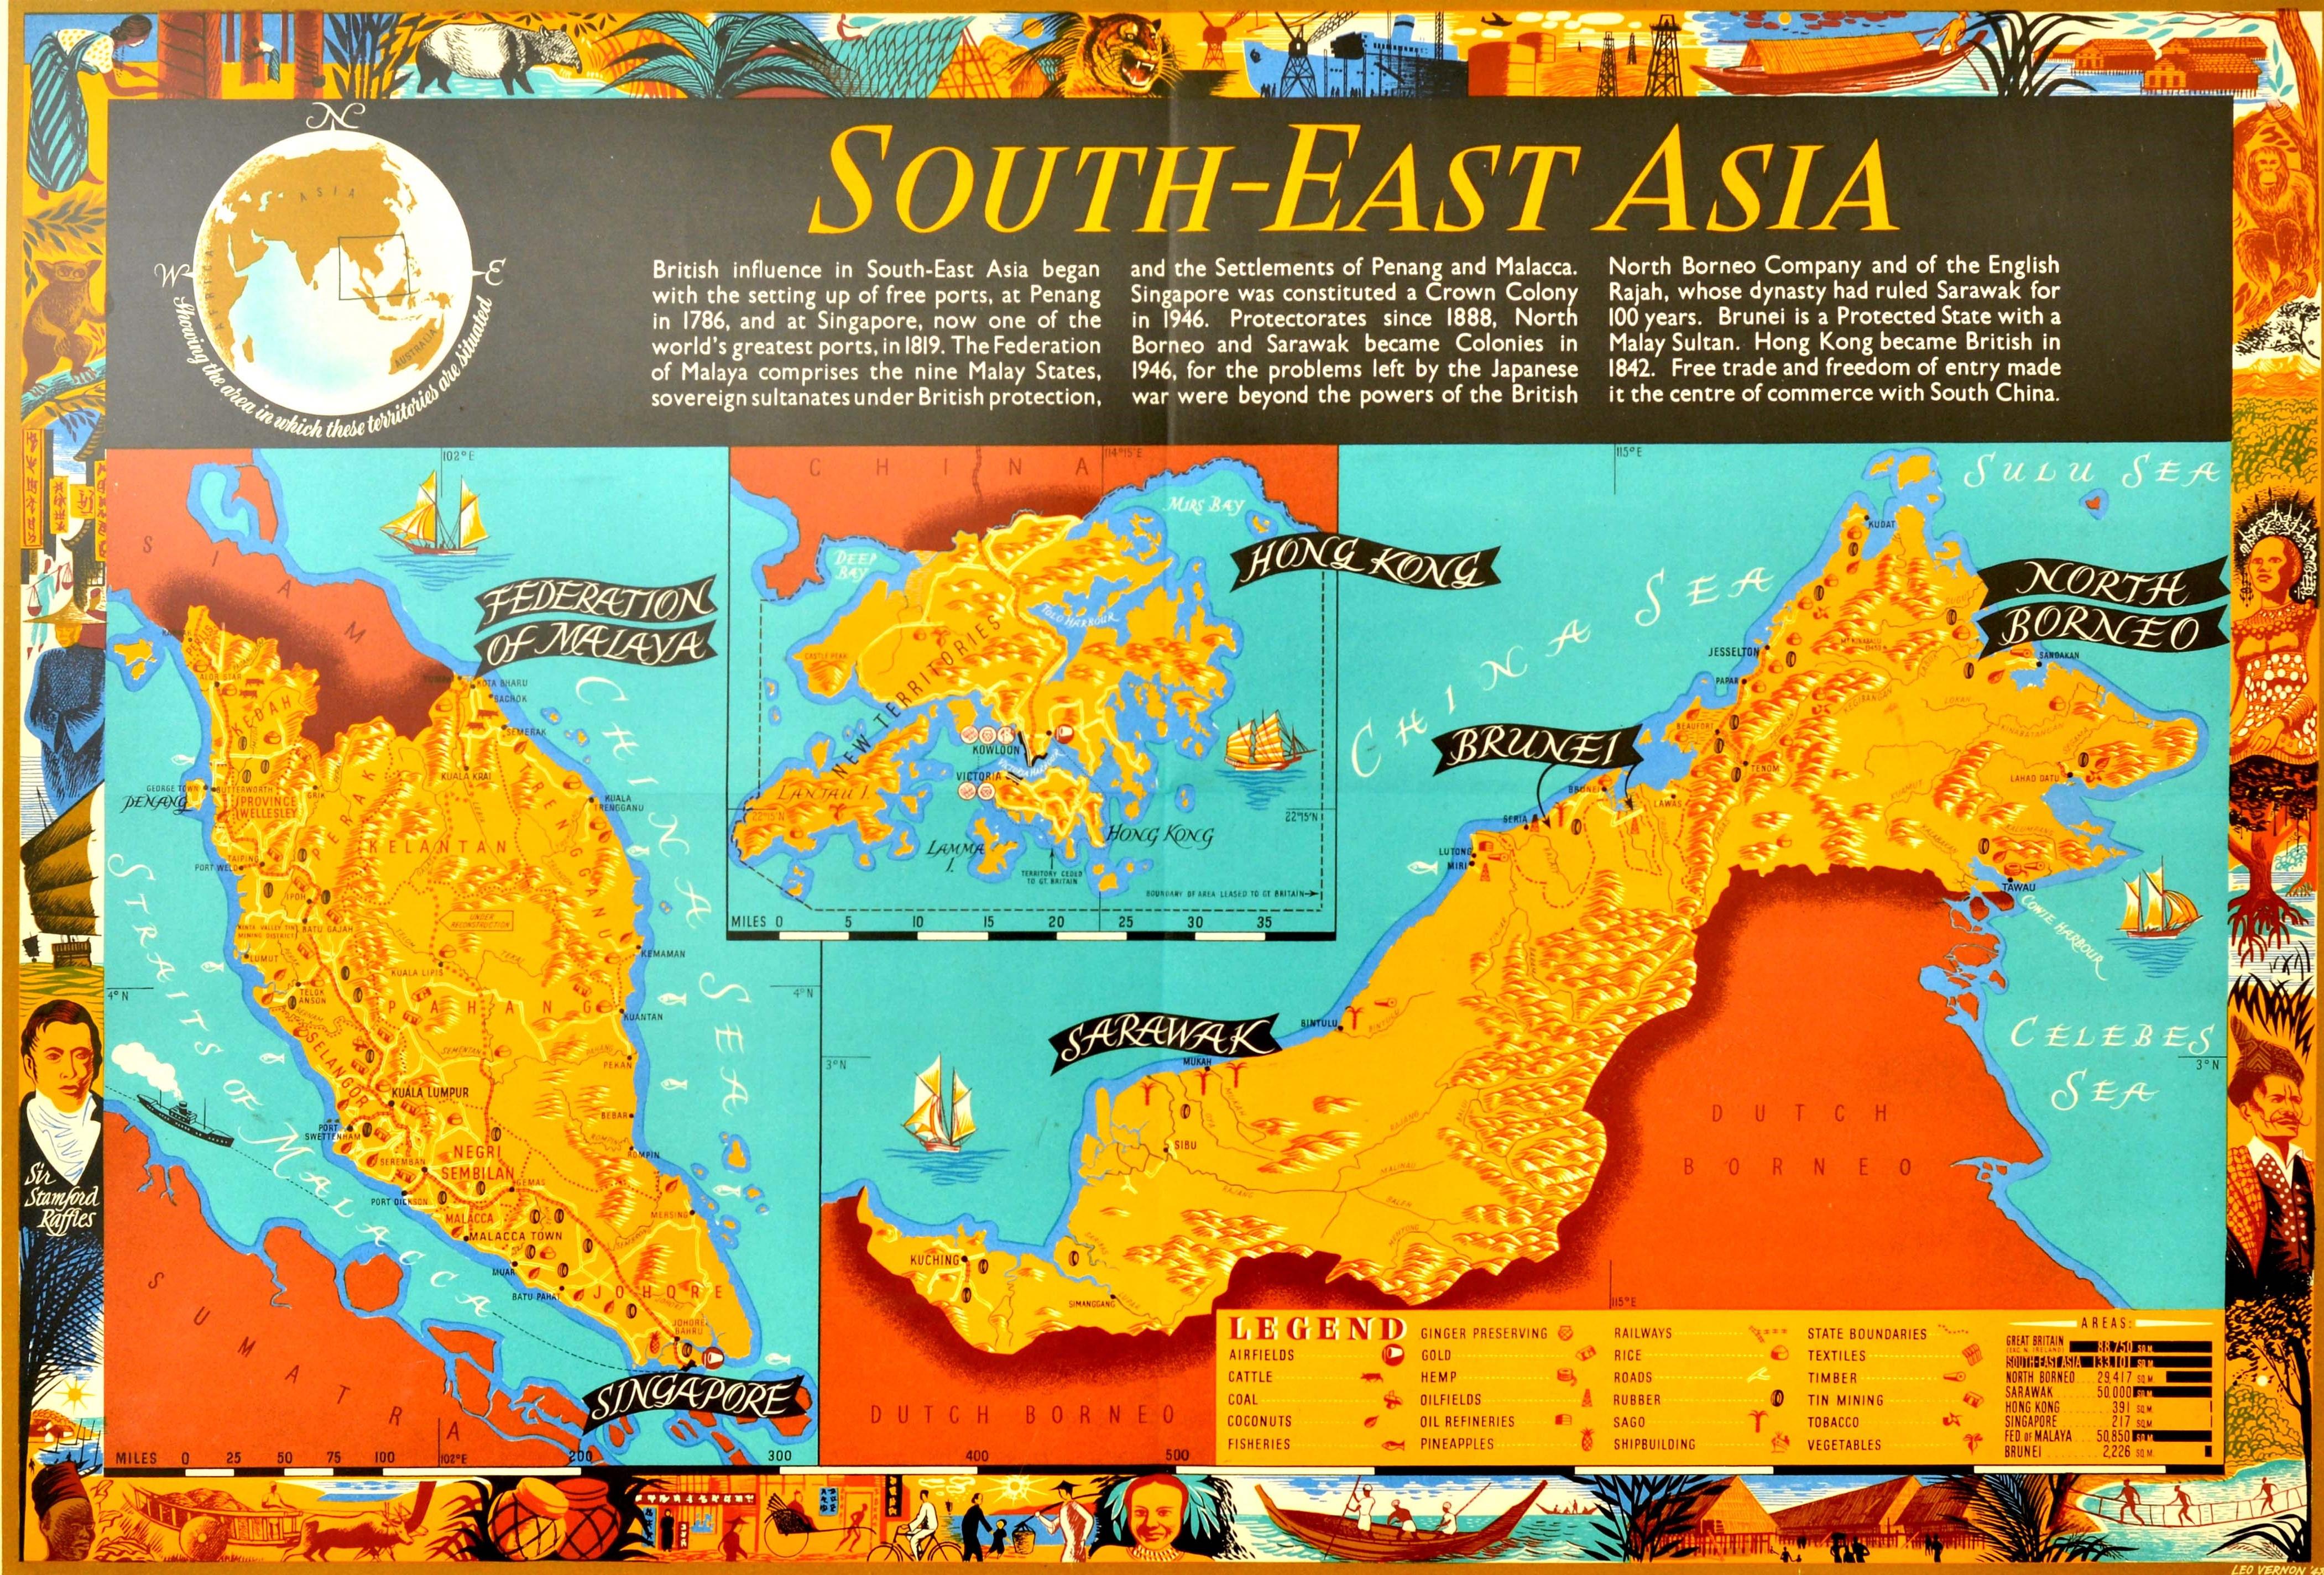 Original-Posterkarte für Südostasien mit Informationen über die Geschichte der britischen Siedlungen und Kolonien in der Föderation von Malaya (Malaysia), Singapur, Hongkong, Sarawak, Brunei und Nordborneo auf der farbenfrohen Karte des